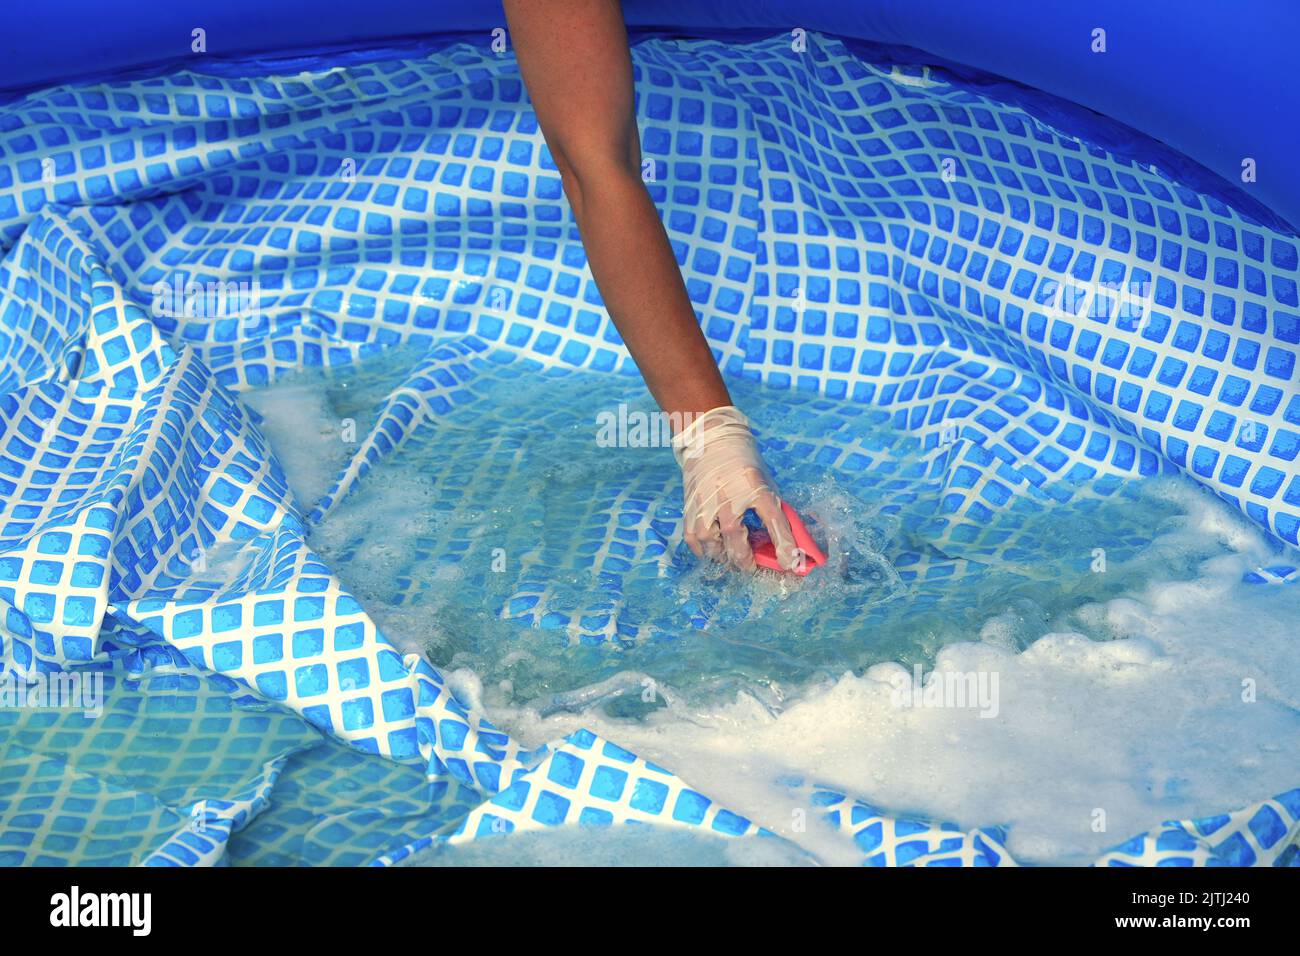 Sporca piscina all'aperto immagini e fotografie stock ad alta risoluzione -  Pagina 6 - Alamy